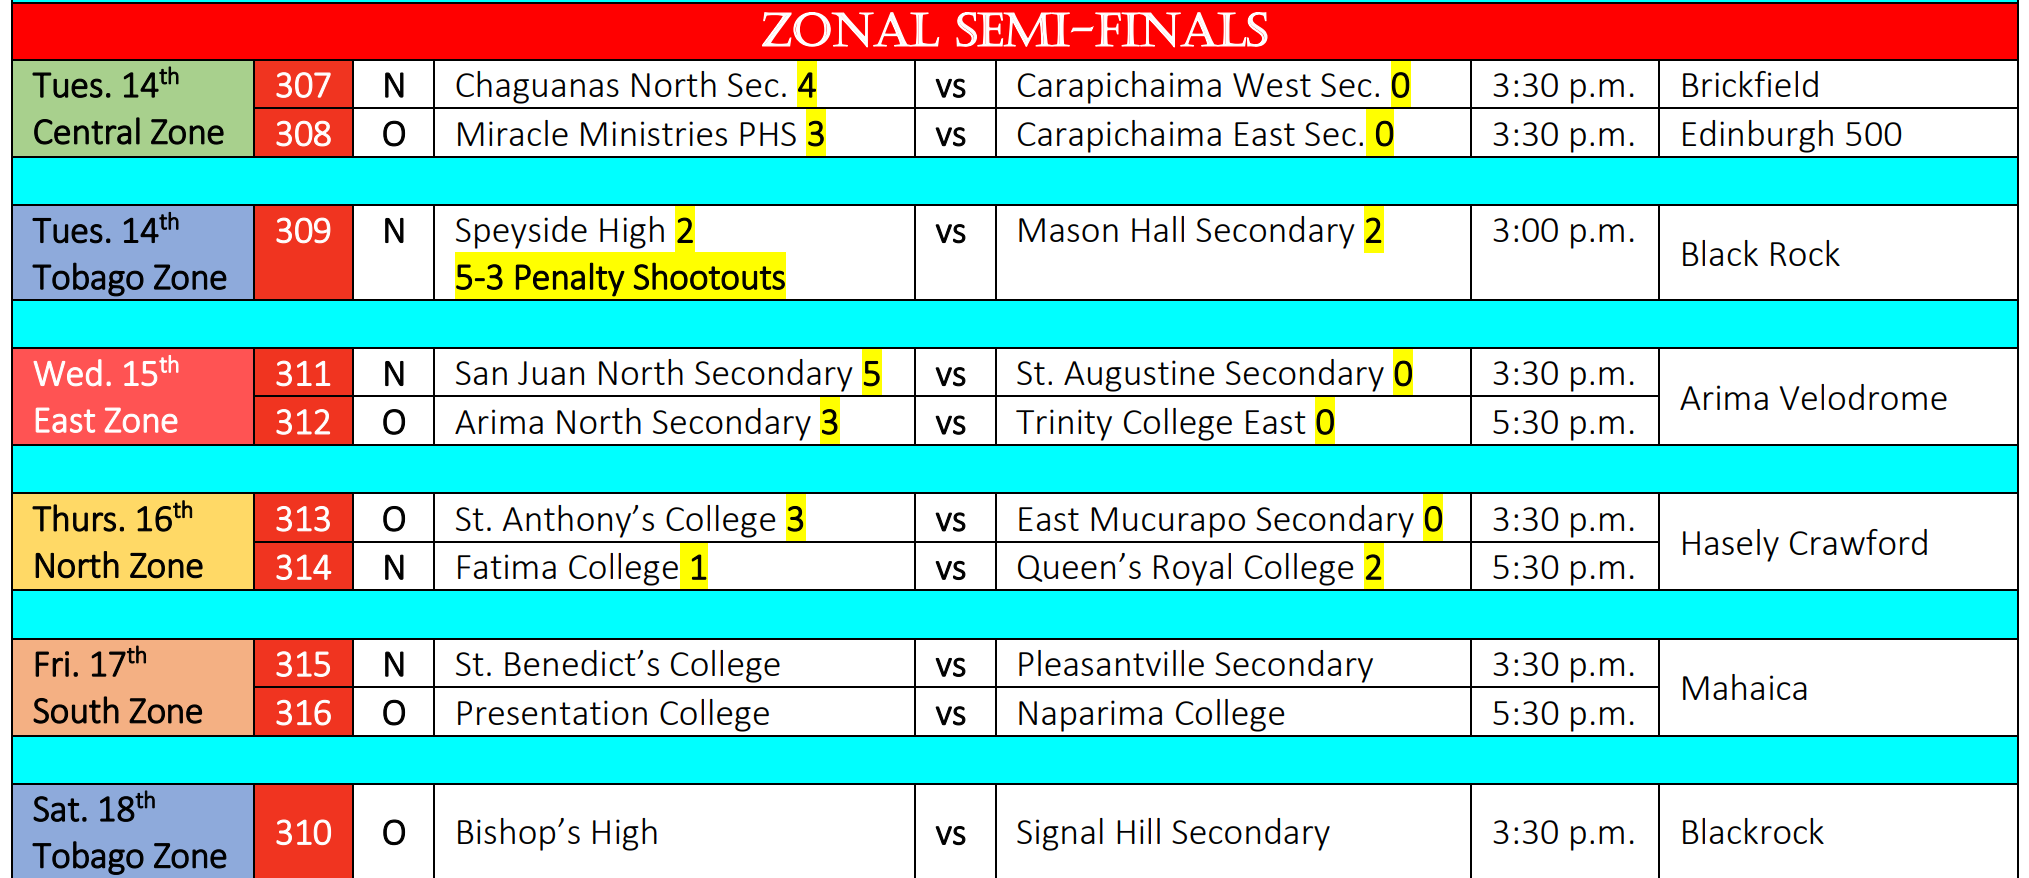 Zonal Semi Finals